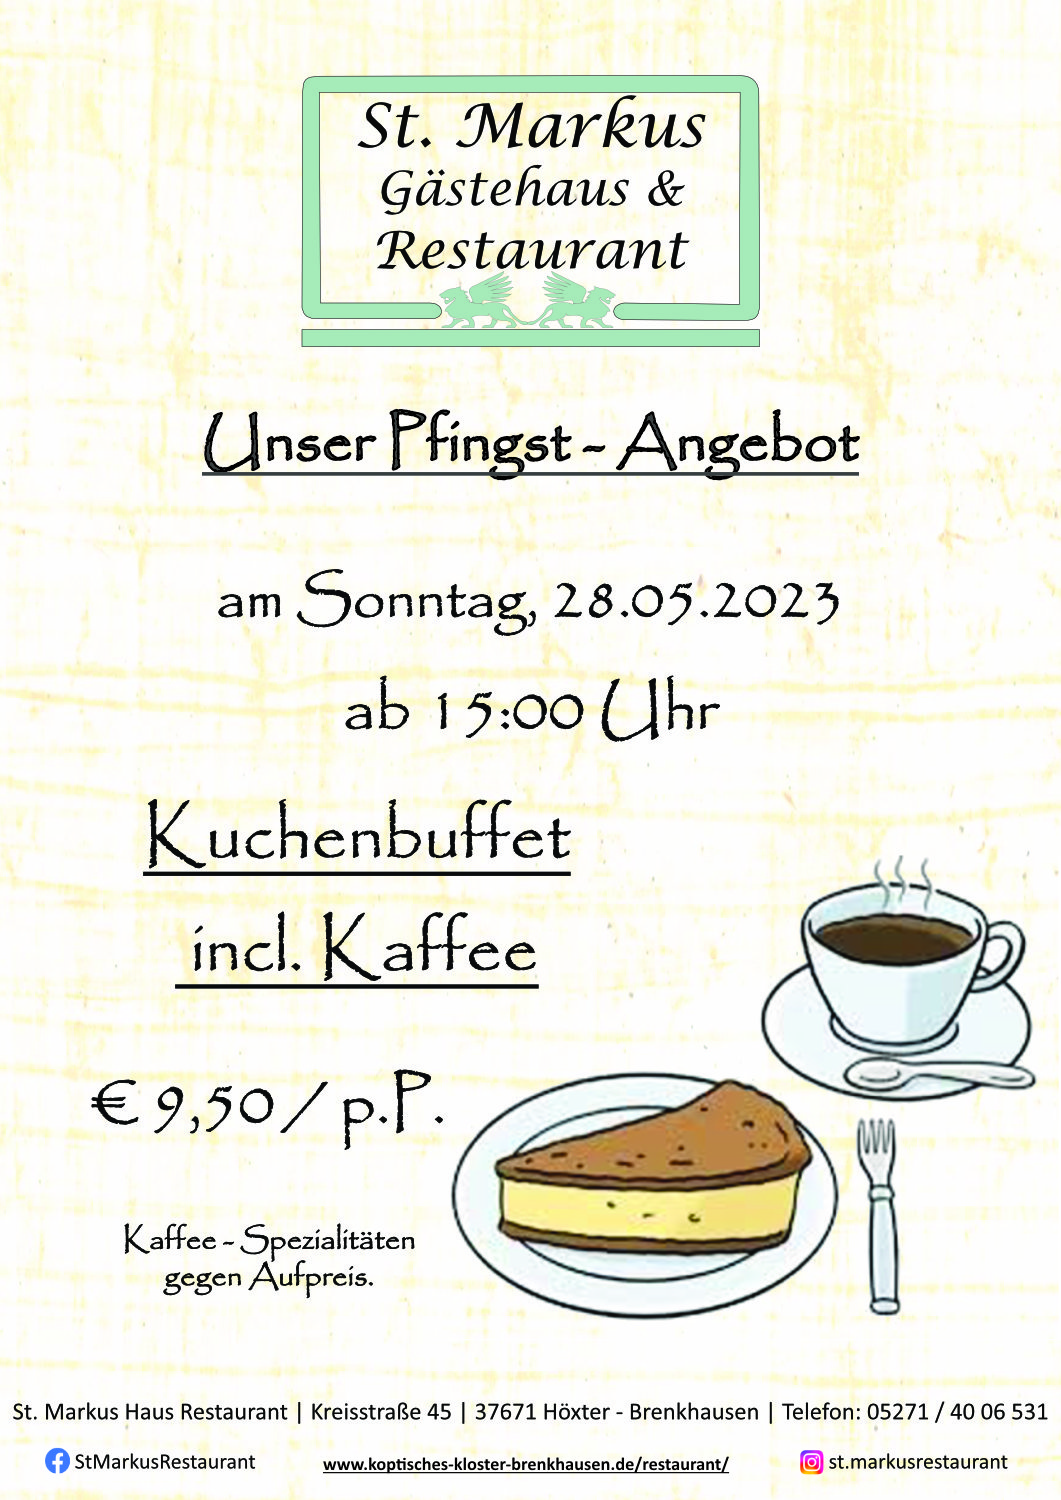 St. Markus Restaurant-Angebot: Pfingst-Kuchenbuffet